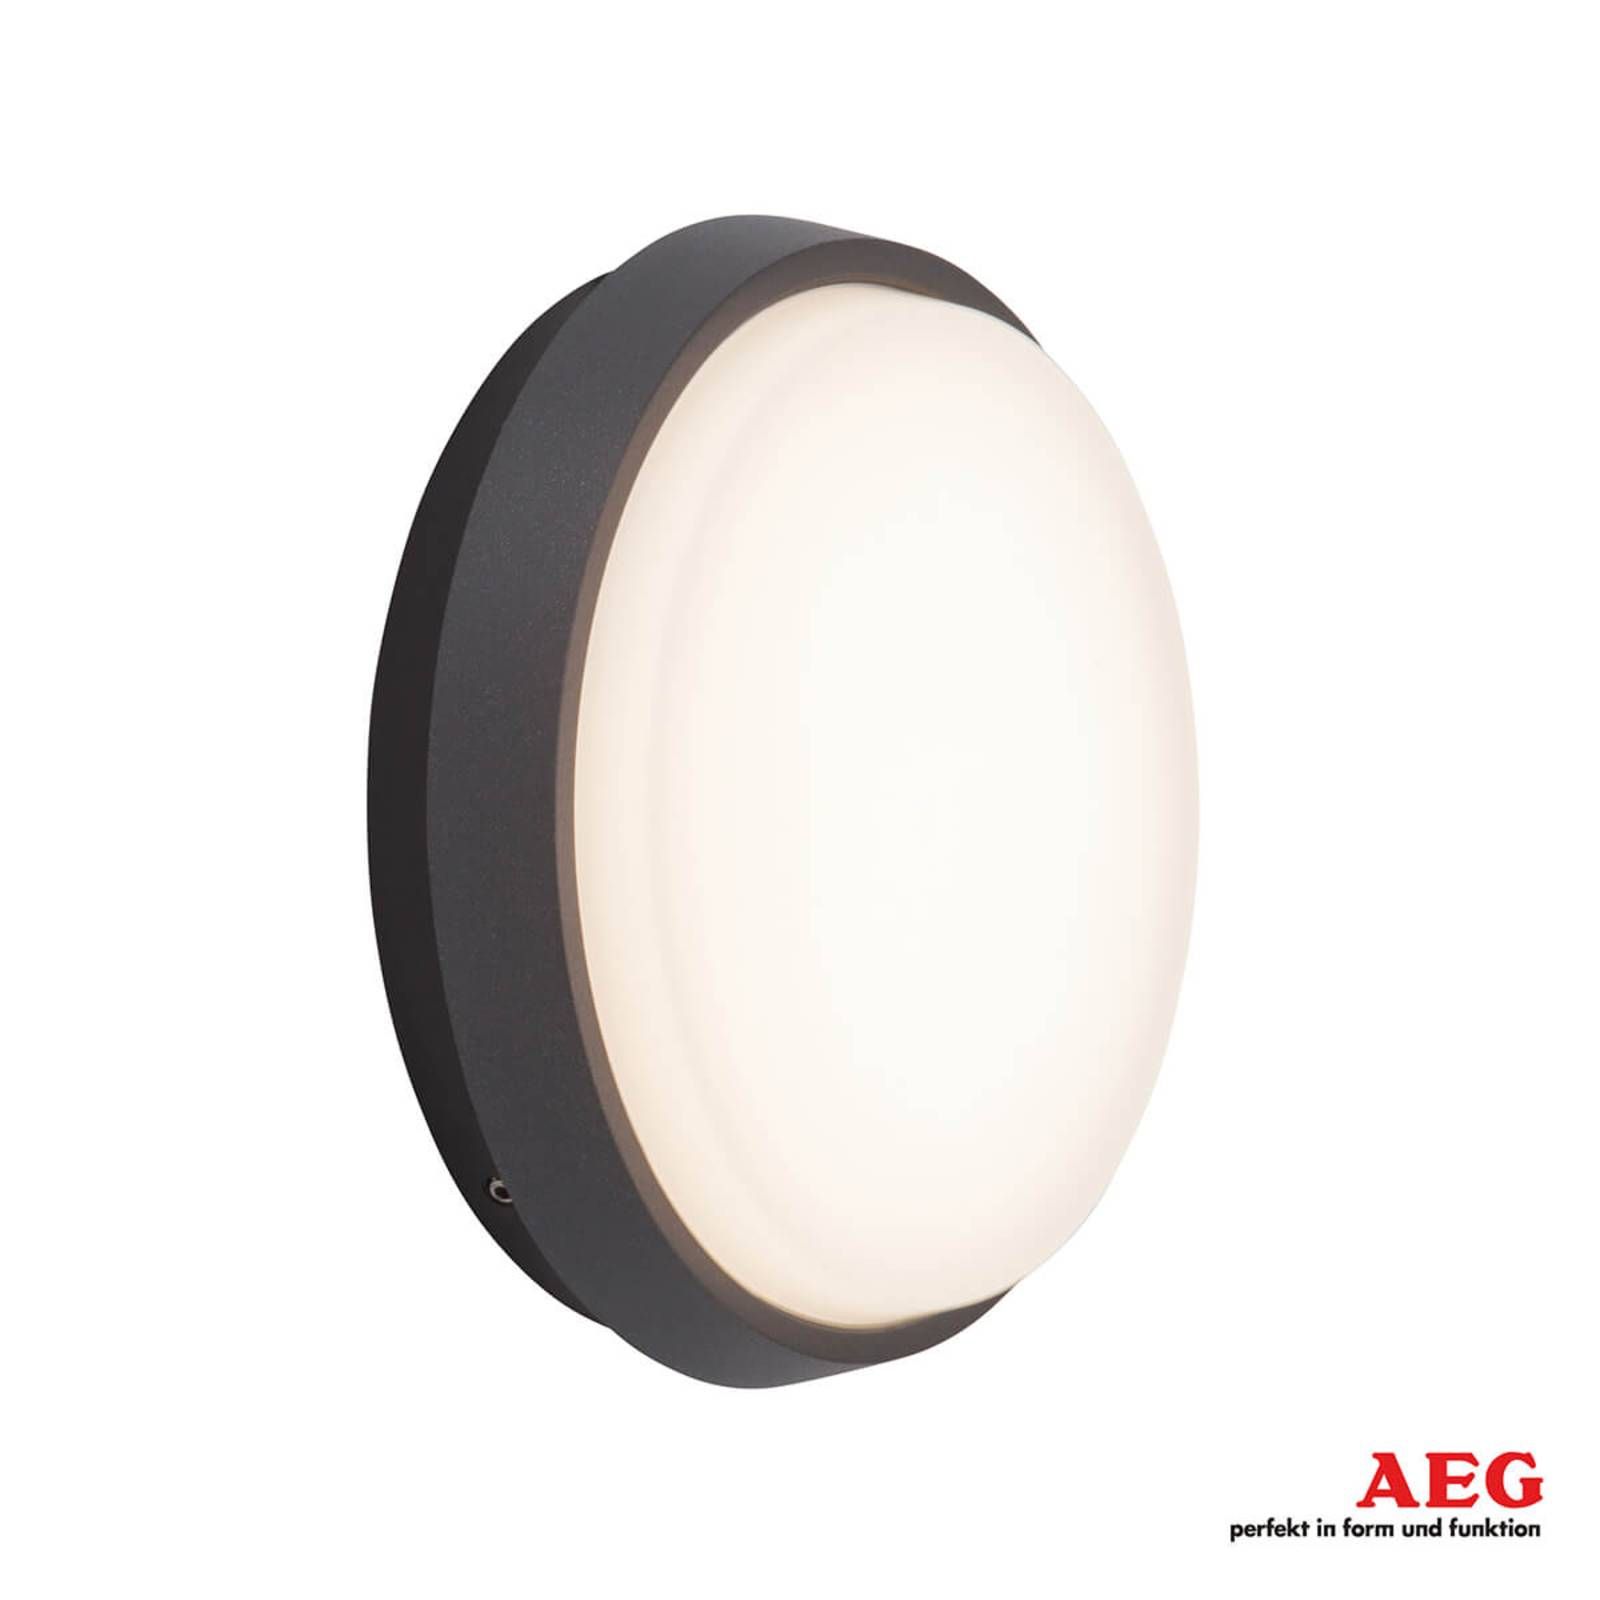 AEG Letan Round vonkajšie nástenné LED svetlo, 9 W, hliník, plast, 9W, Energialuokka: E